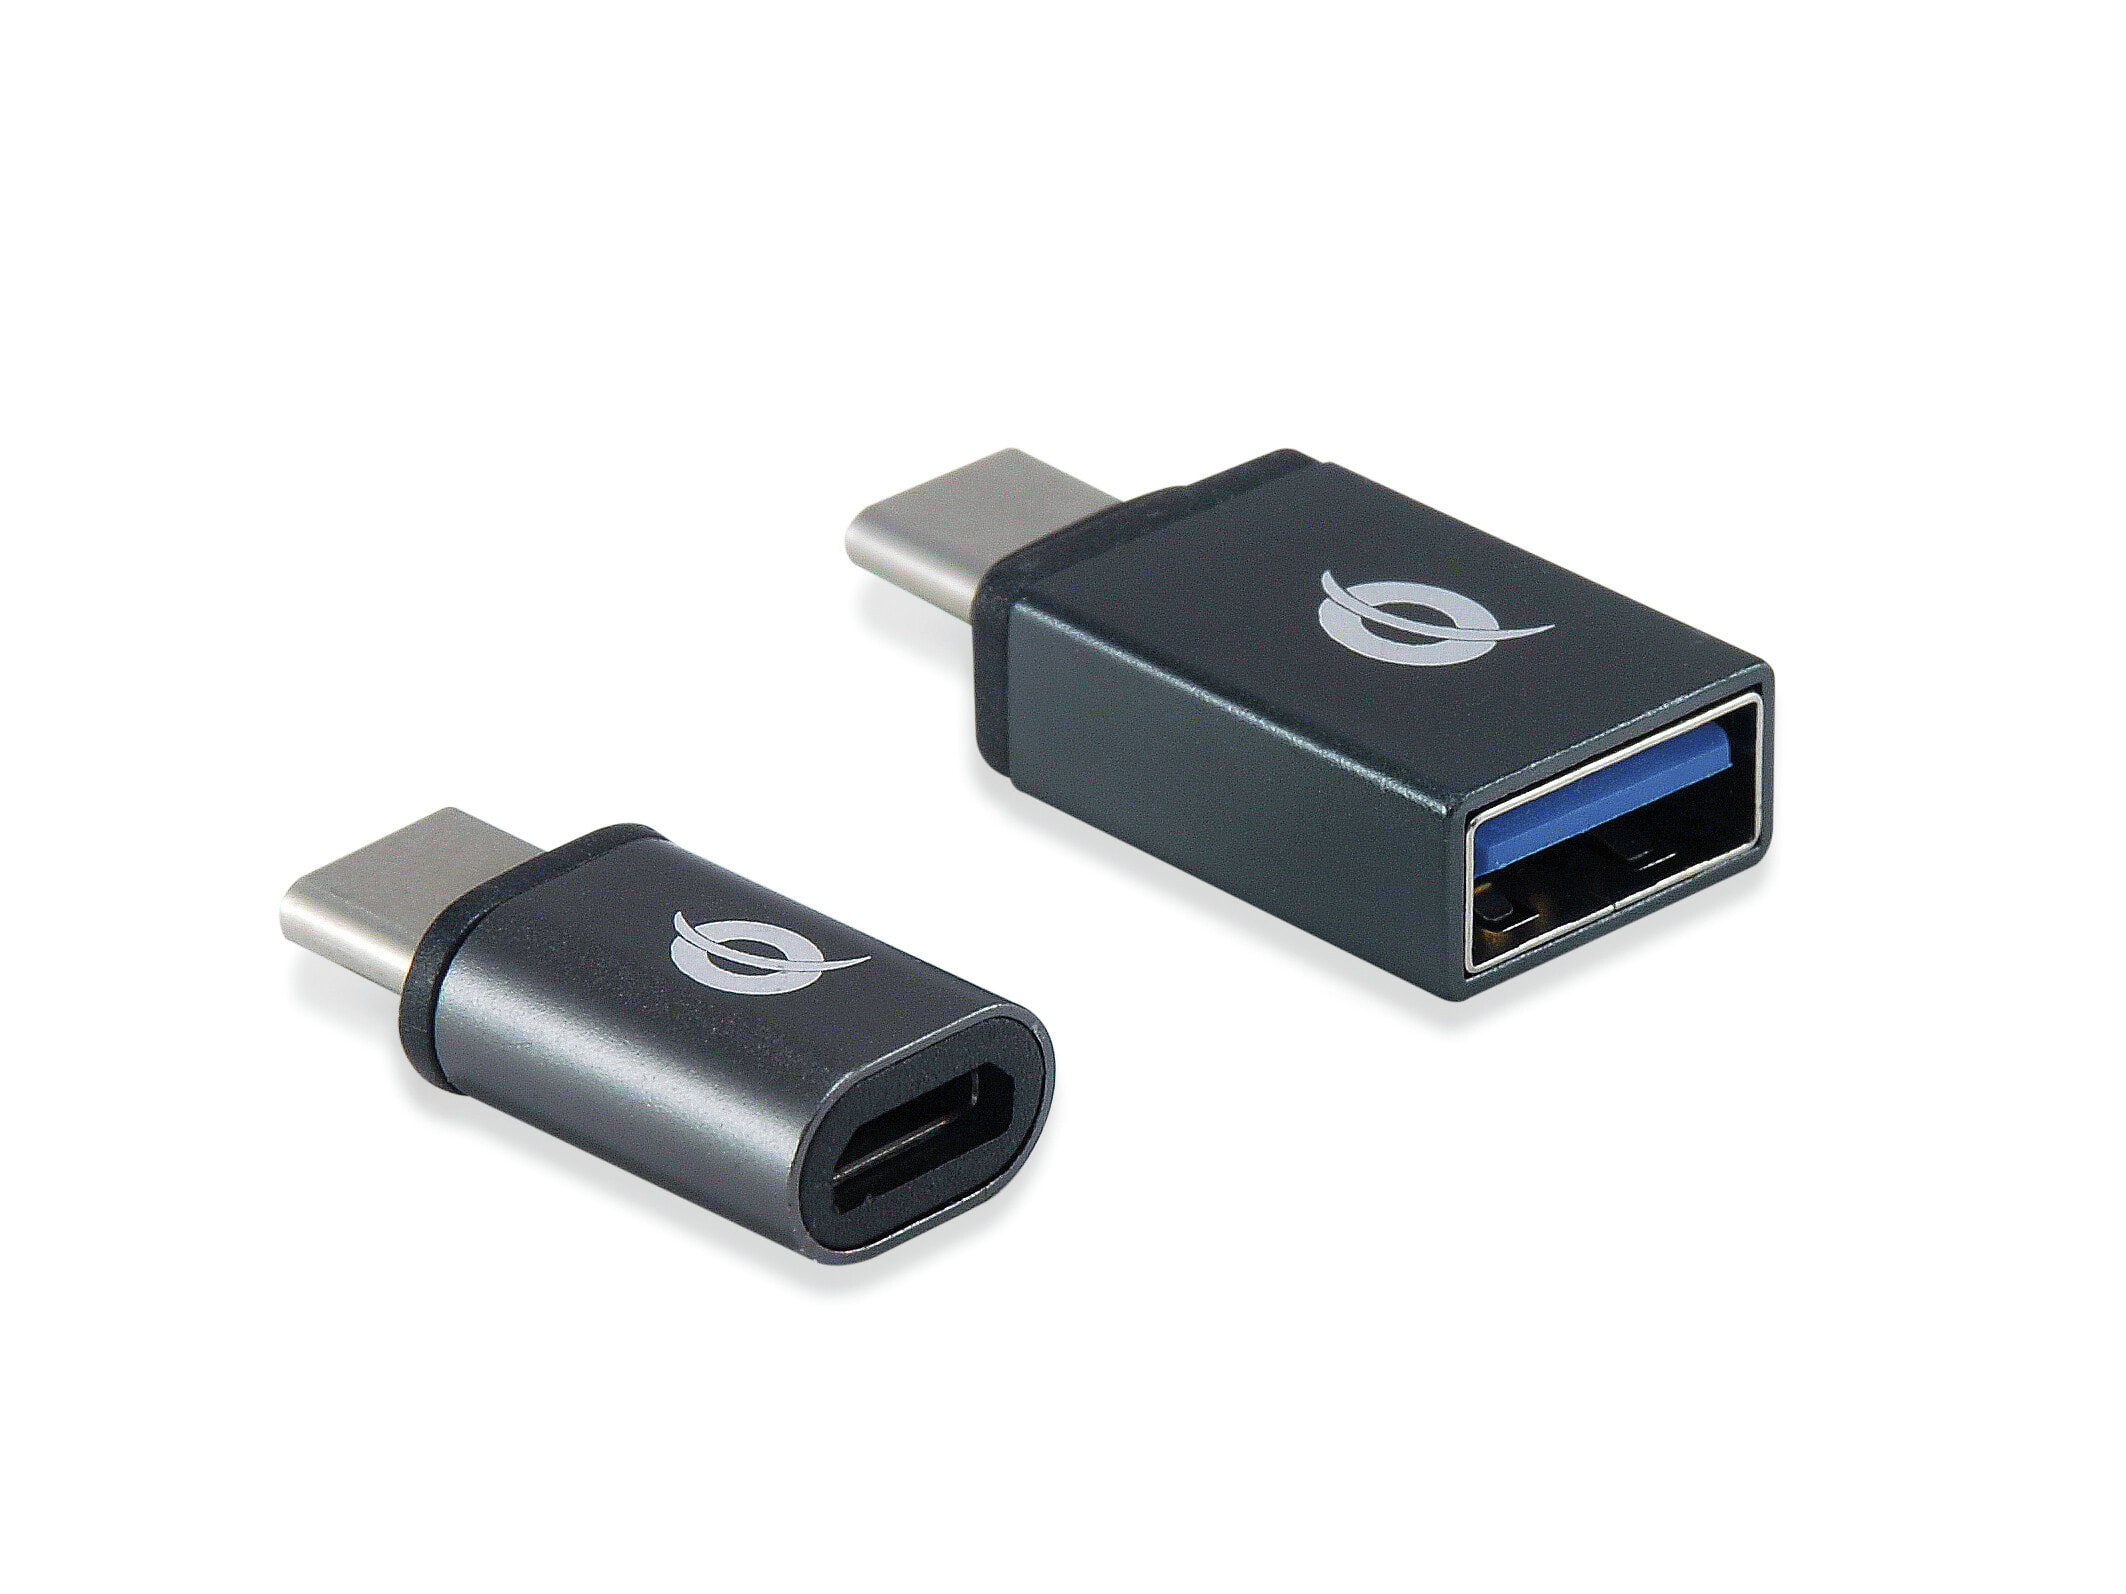 Conceptronic DONN04G кабельный разъем/переходник USB 3.1 Gen 1 Type-C, USB 2.0 Type-C USB 3.1 Gen 1 Type-A, USB 2.0 Micro Черный